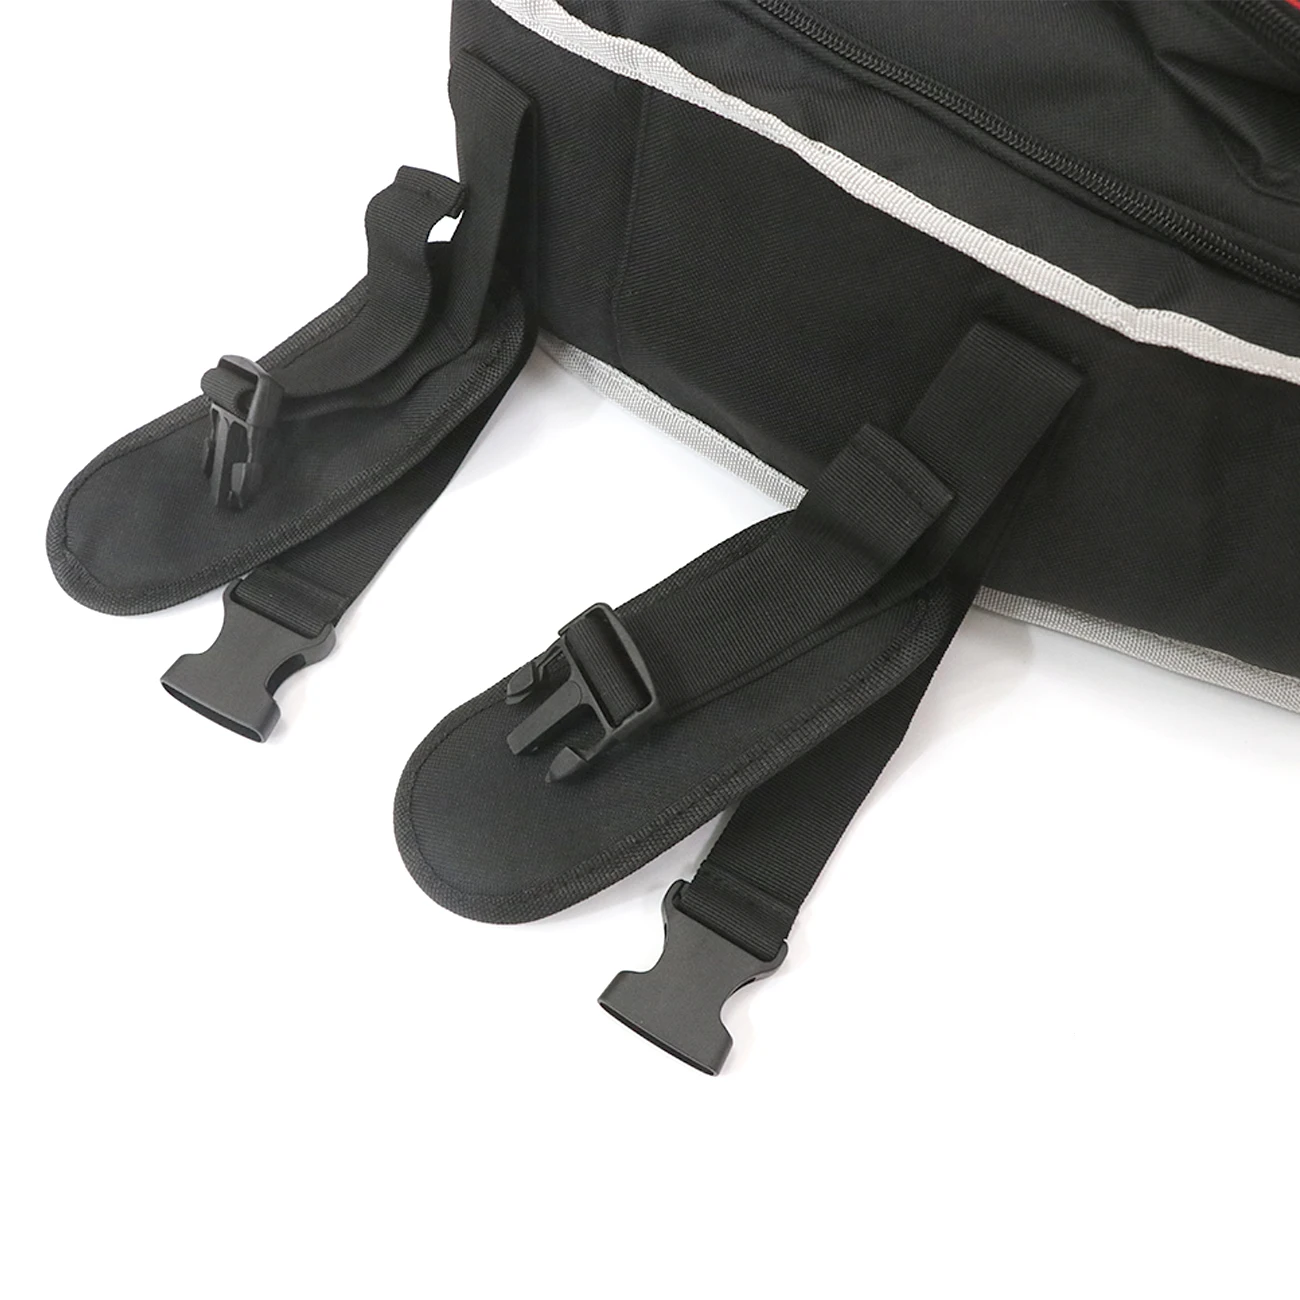 Для Jeep Wrangler JK JL органайзер мульти Сумочка карманная задняя багажник Левая Правая сторона инструмент гаджет грузовой багаж сумка седельная сумка 2007